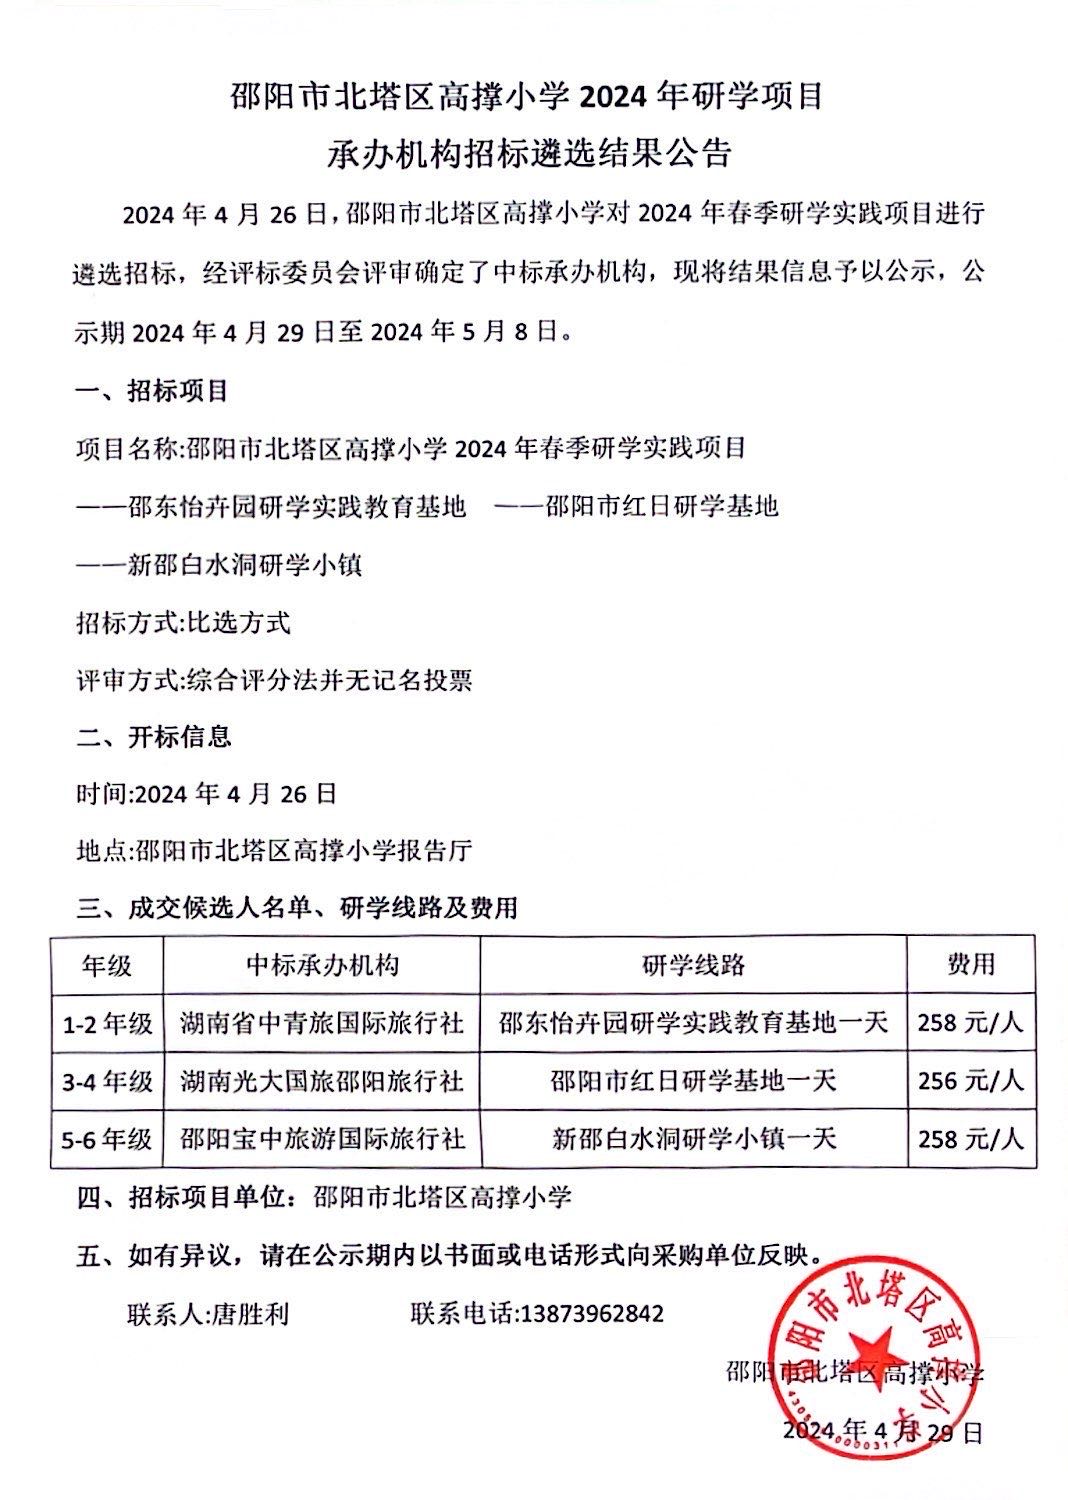 邵阳市北塔区高撑小学2024年研学项目承办机构招标遴选结果公示(图1)